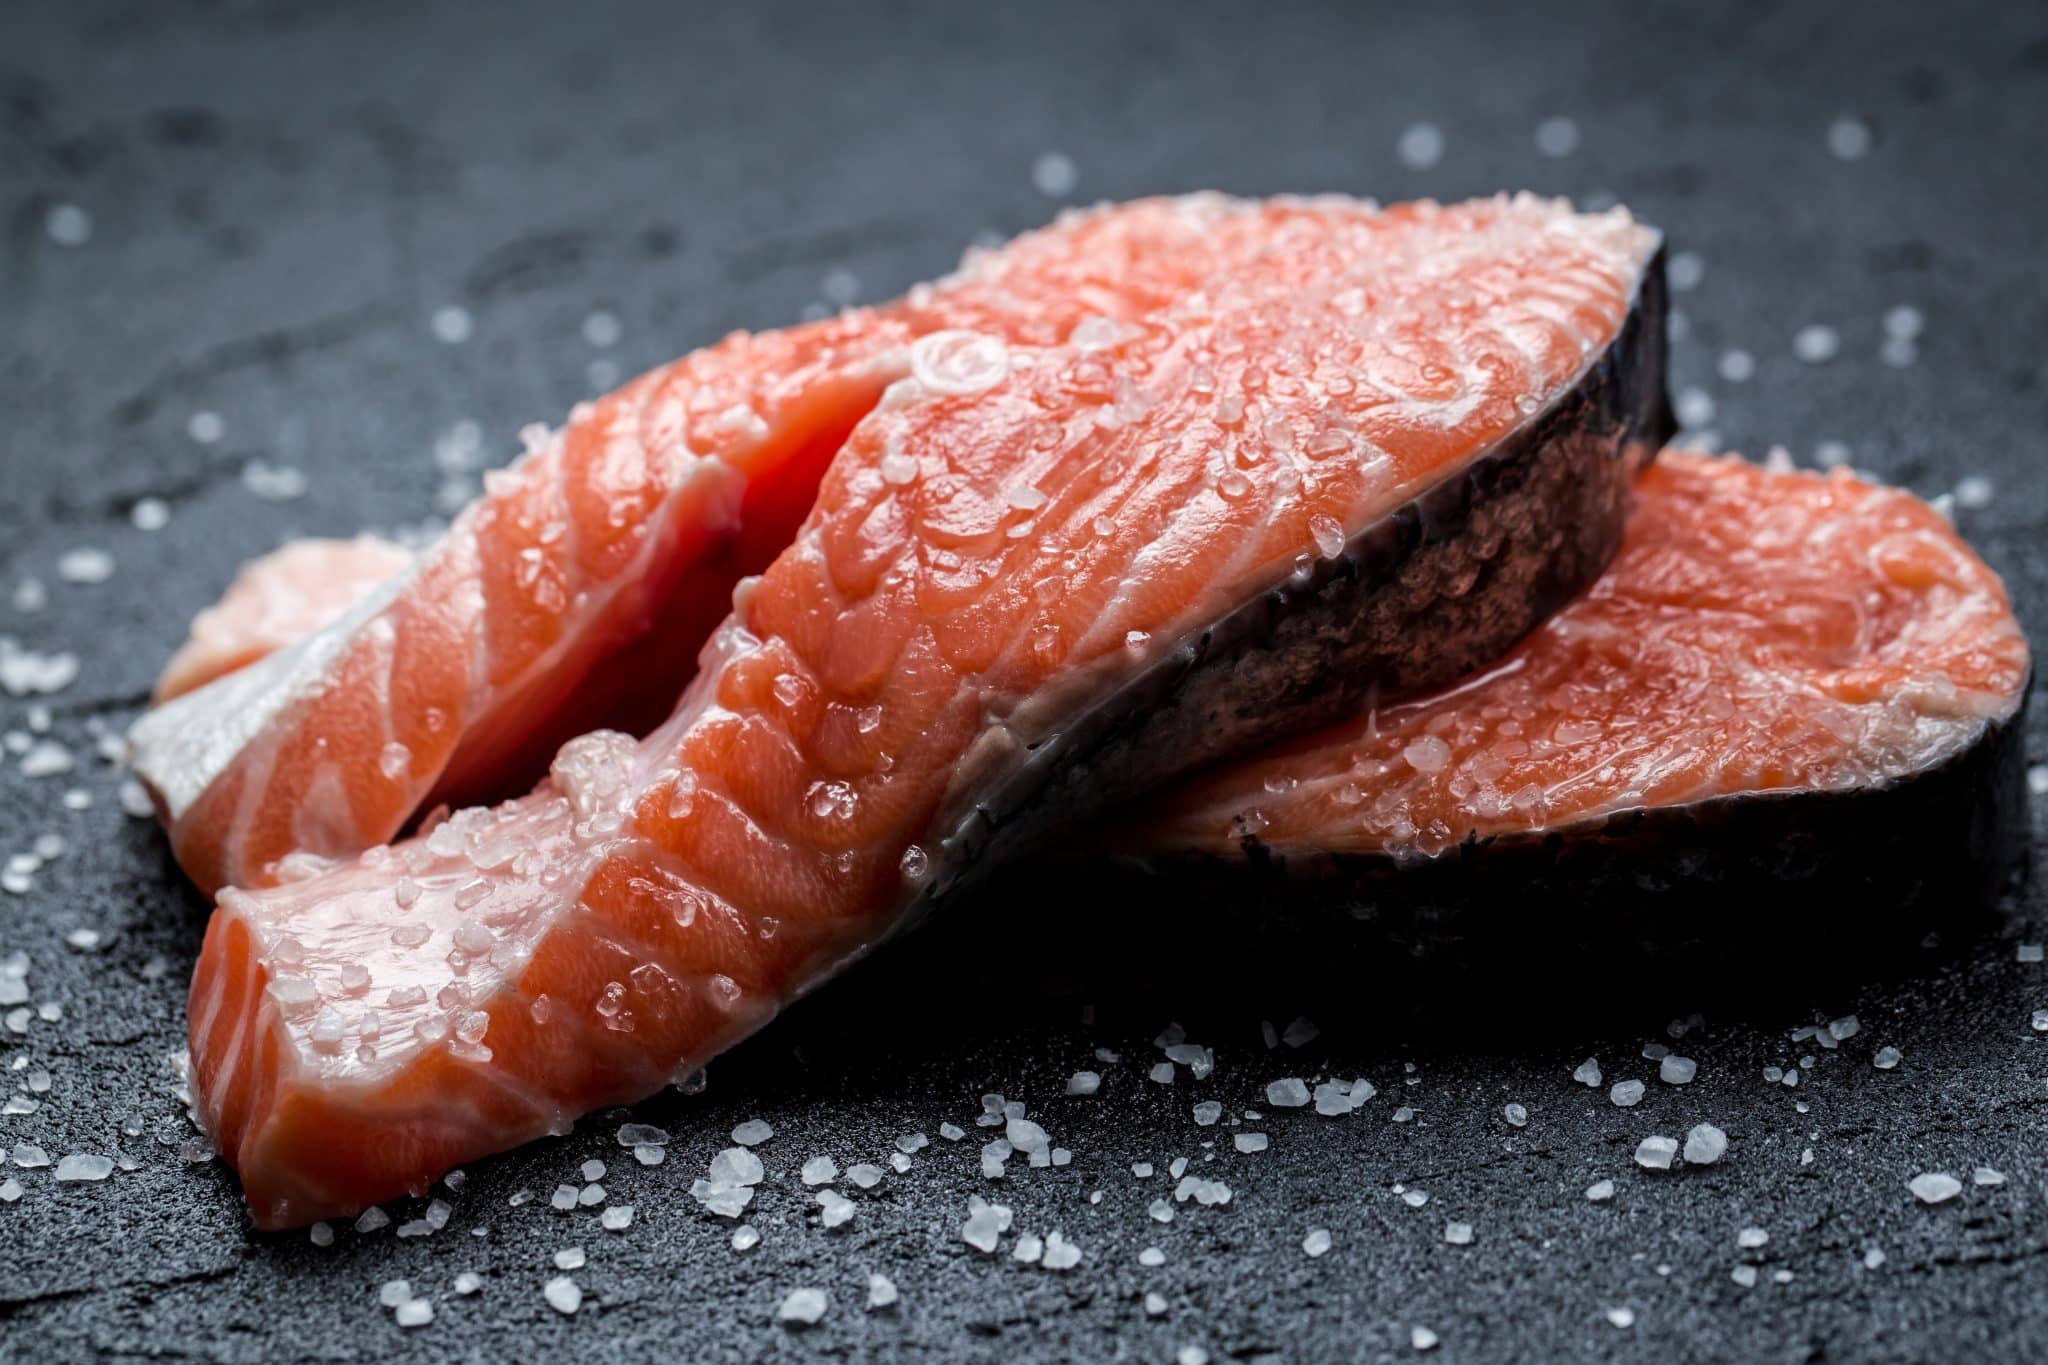 Comment conserver le saumon fumé sans risque de listeria ?